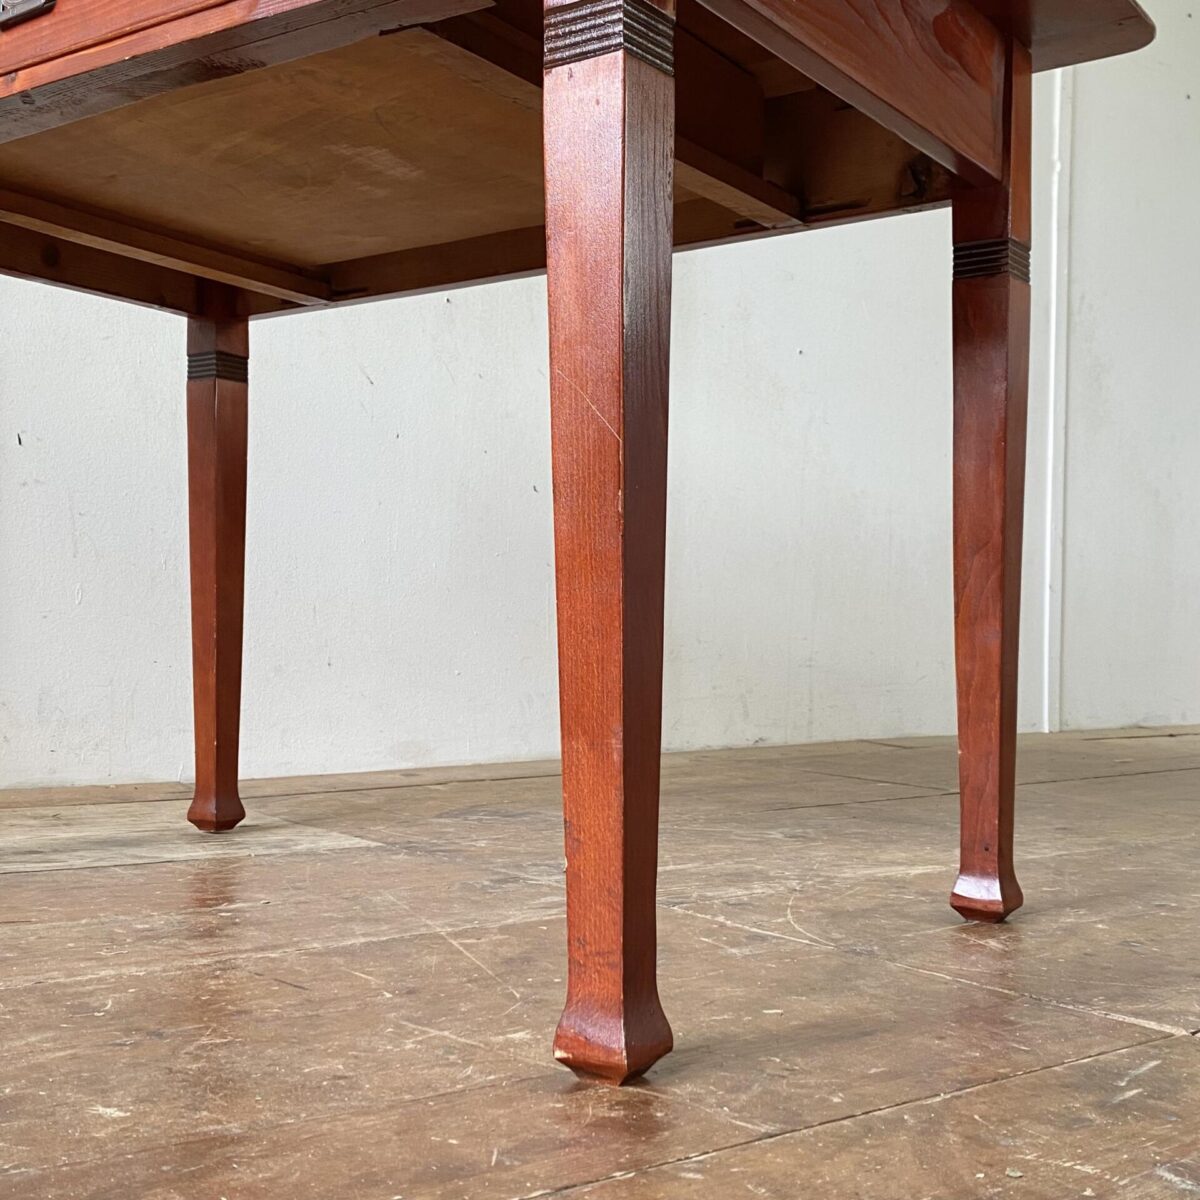 Deuxieme.shop. Buchenholz Schreibtisch mit Schublade aus Vollholz. 120x74cm Höhe 76cm. Der Tisch ist in stabilem Zustand, rotbraun gebeizt und lackiert. Die Stapelstühle sind ebenfalls verfügbar, 4er Set 120.- Von Danerka made in Dänemark. 